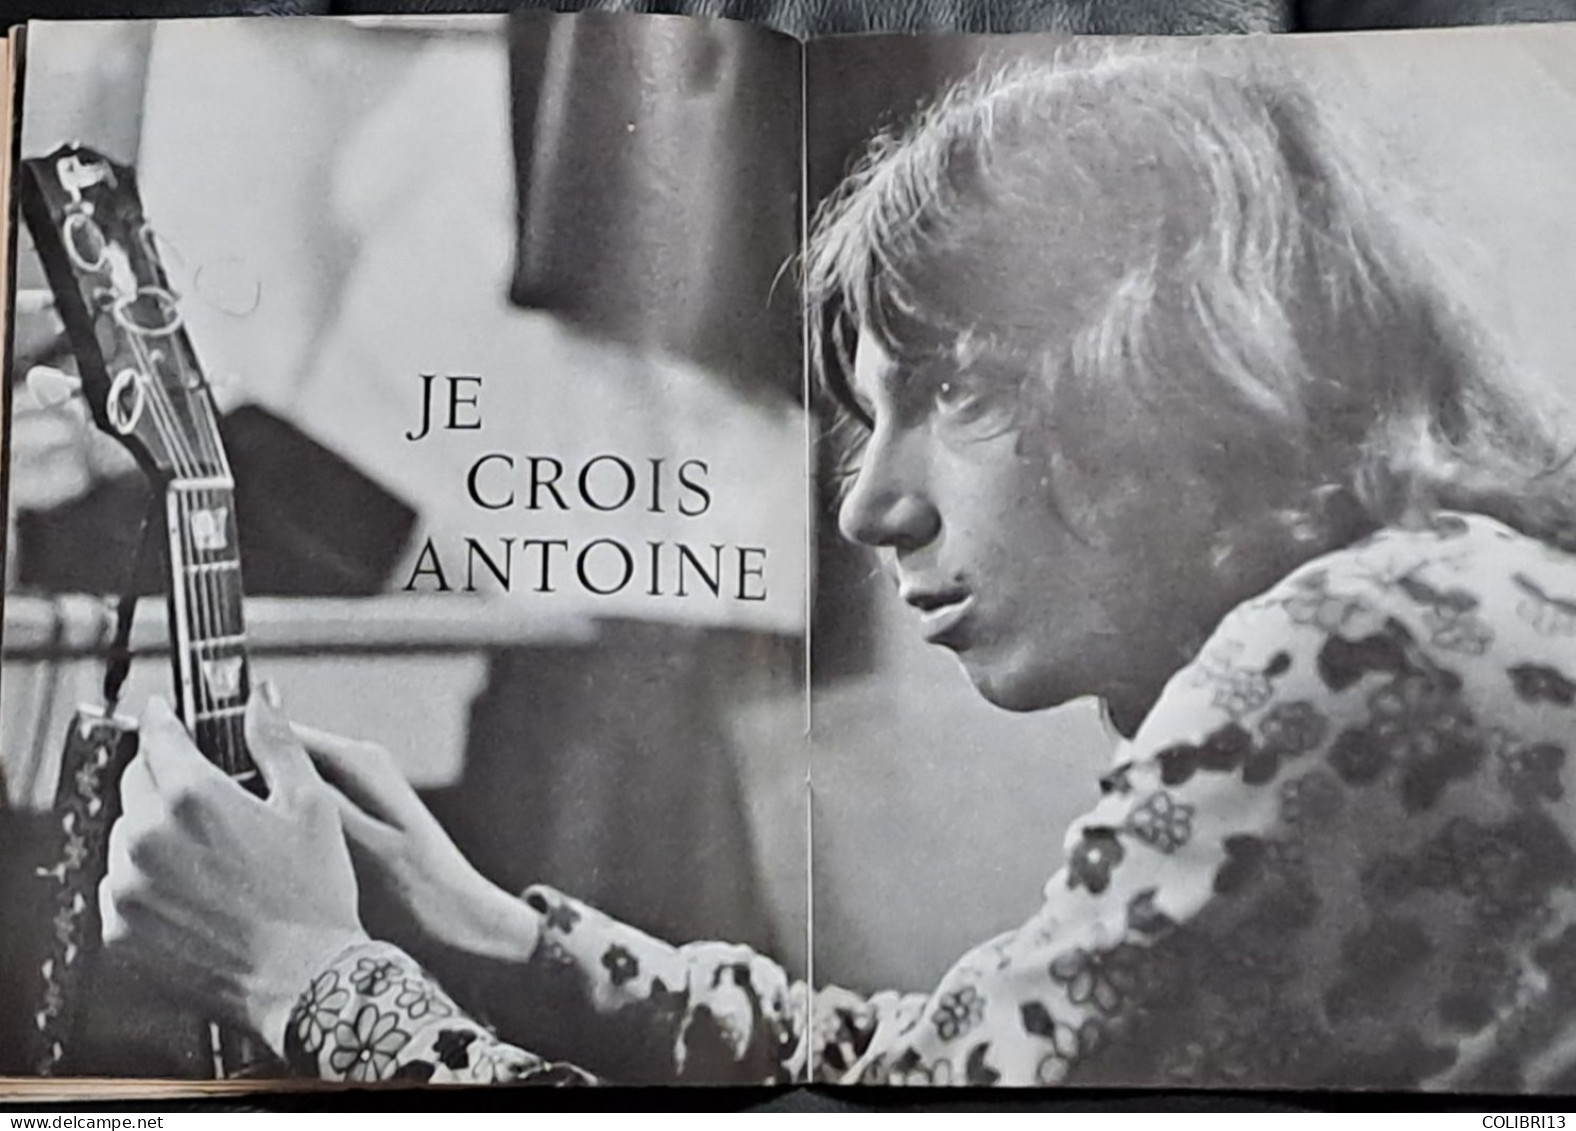 ROCK & ET  FOLK N°00 RARISSIME JAZZ HOT Aout 1966  68 Pages  CHUCK ANTOINE NINO Ferrer STONES Dessin De CABU SINE - Musique